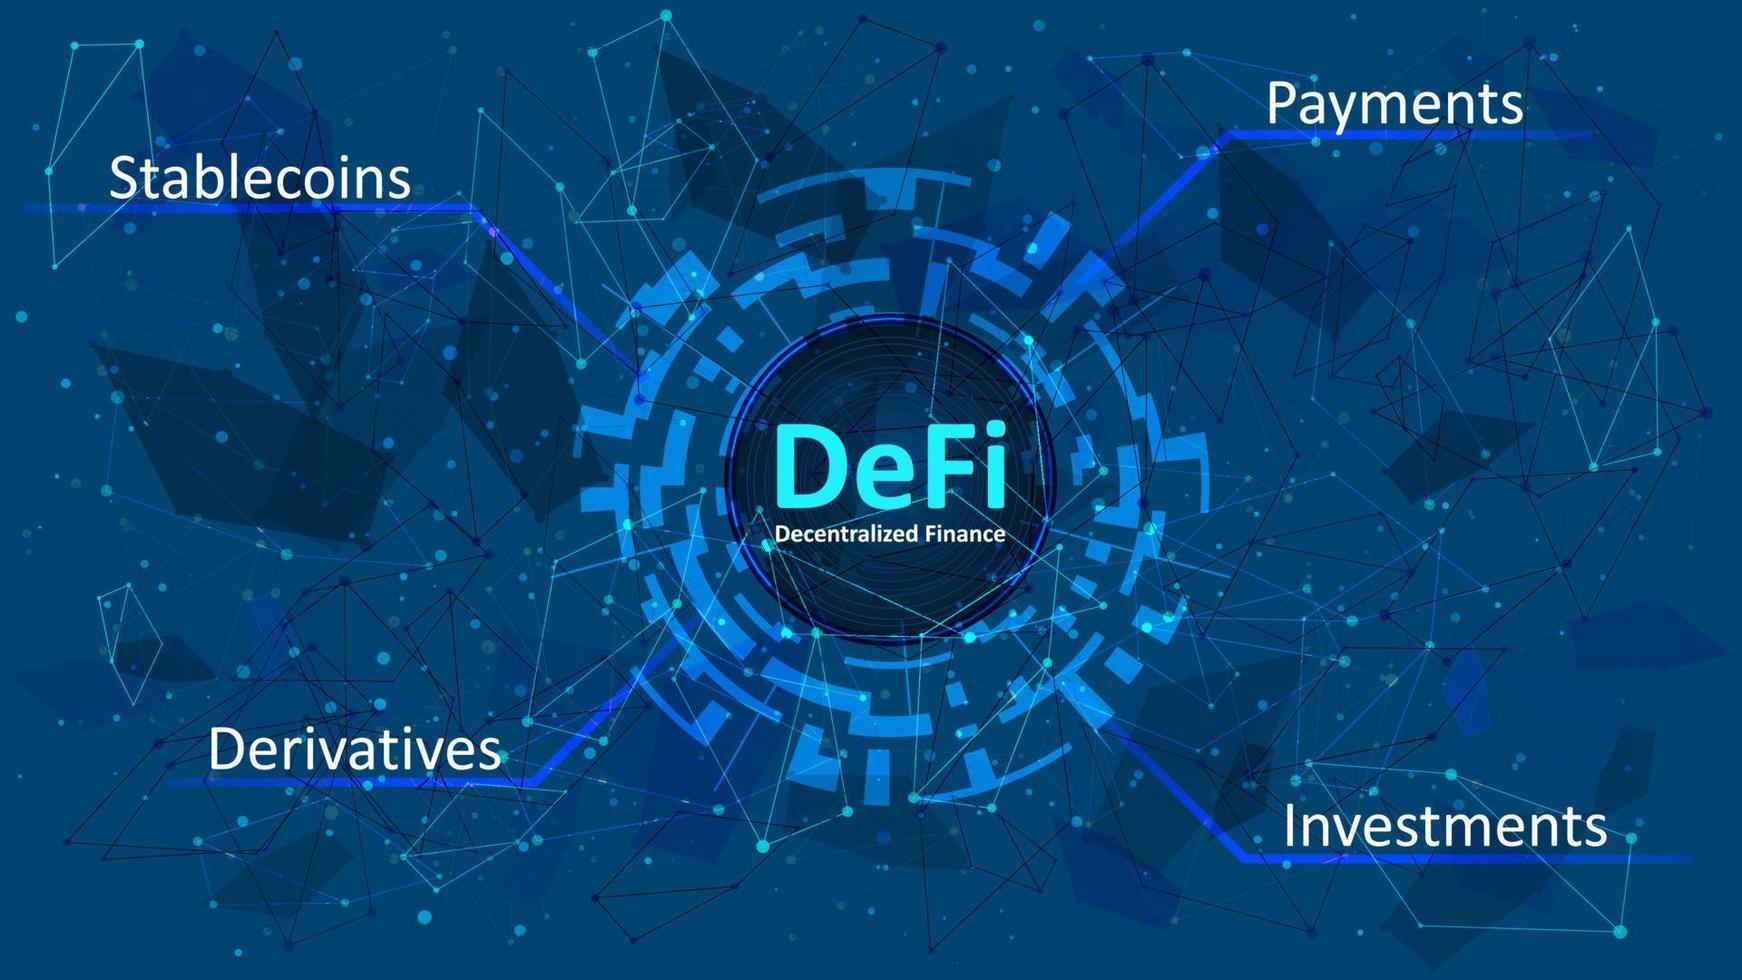 defi - finance décentralisée dans un cercle numérique sur fond polygonal abstrait bleu foncé. un écosystème d'applications et de services financiers basés sur des blockchains publiques. vecteur eps 10.